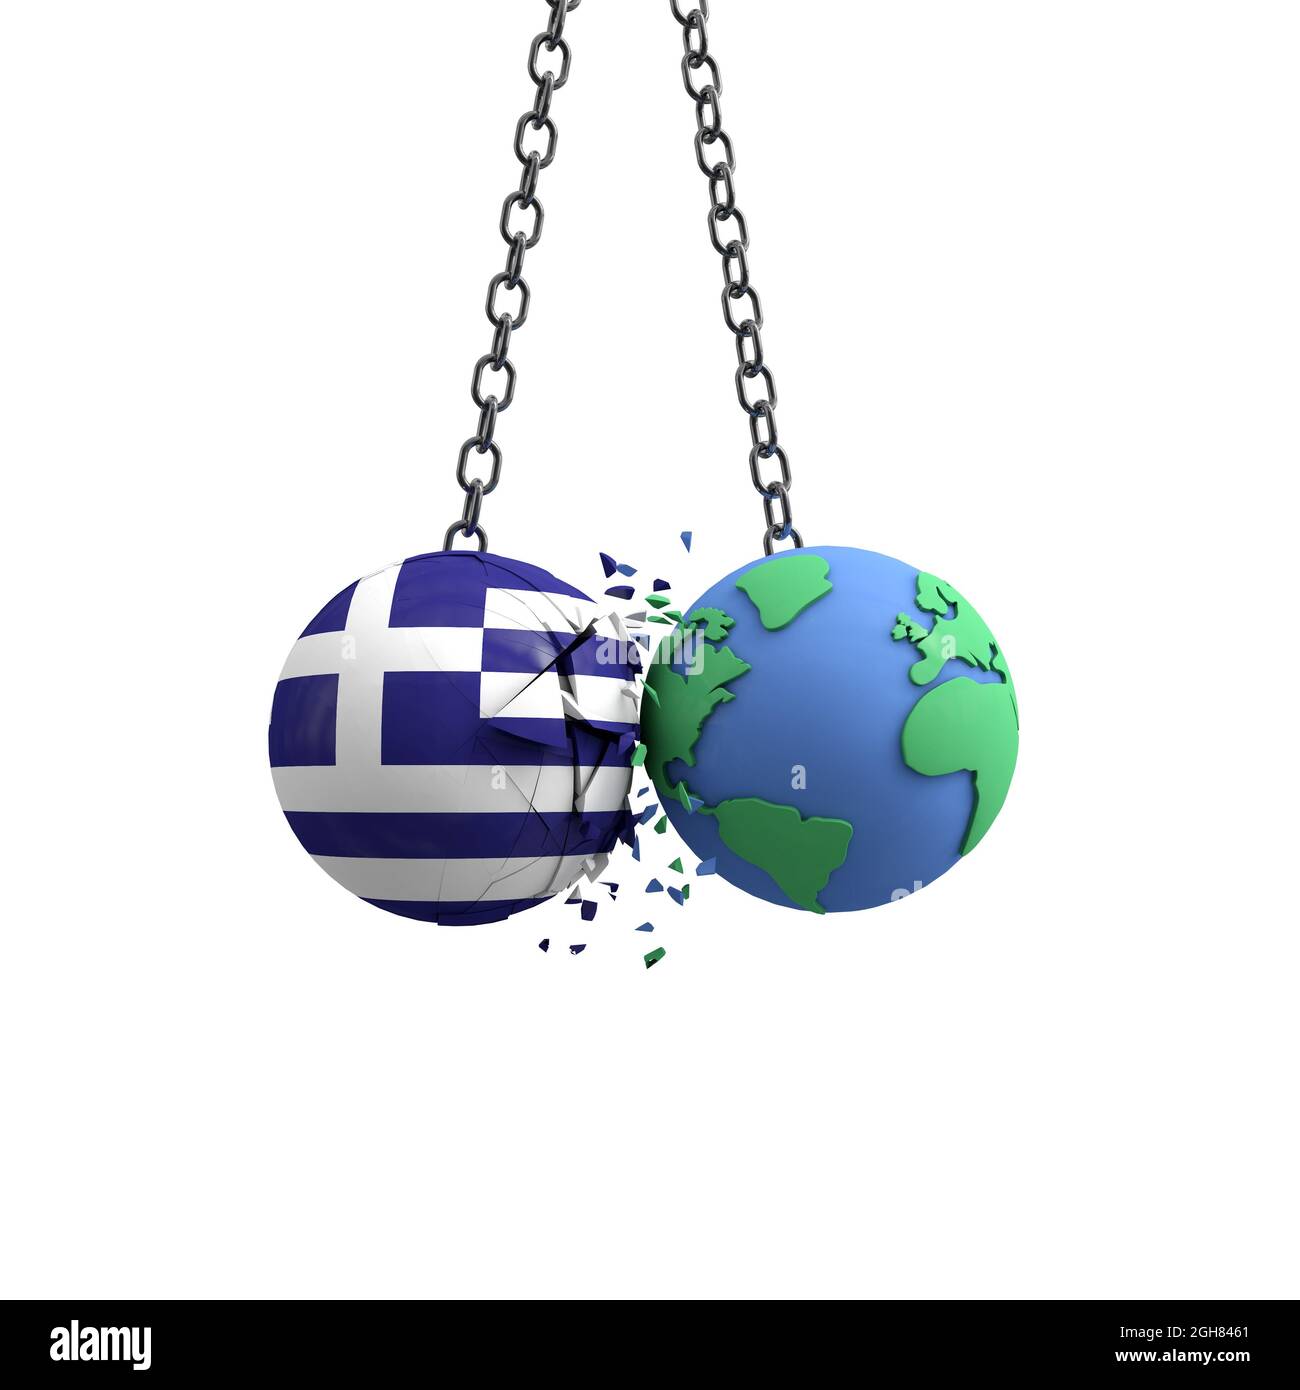 Le drapeau de la Grèce frappe la planète terre. Concept d'impact sur l'environnement. Rendu 3D Banque D'Images